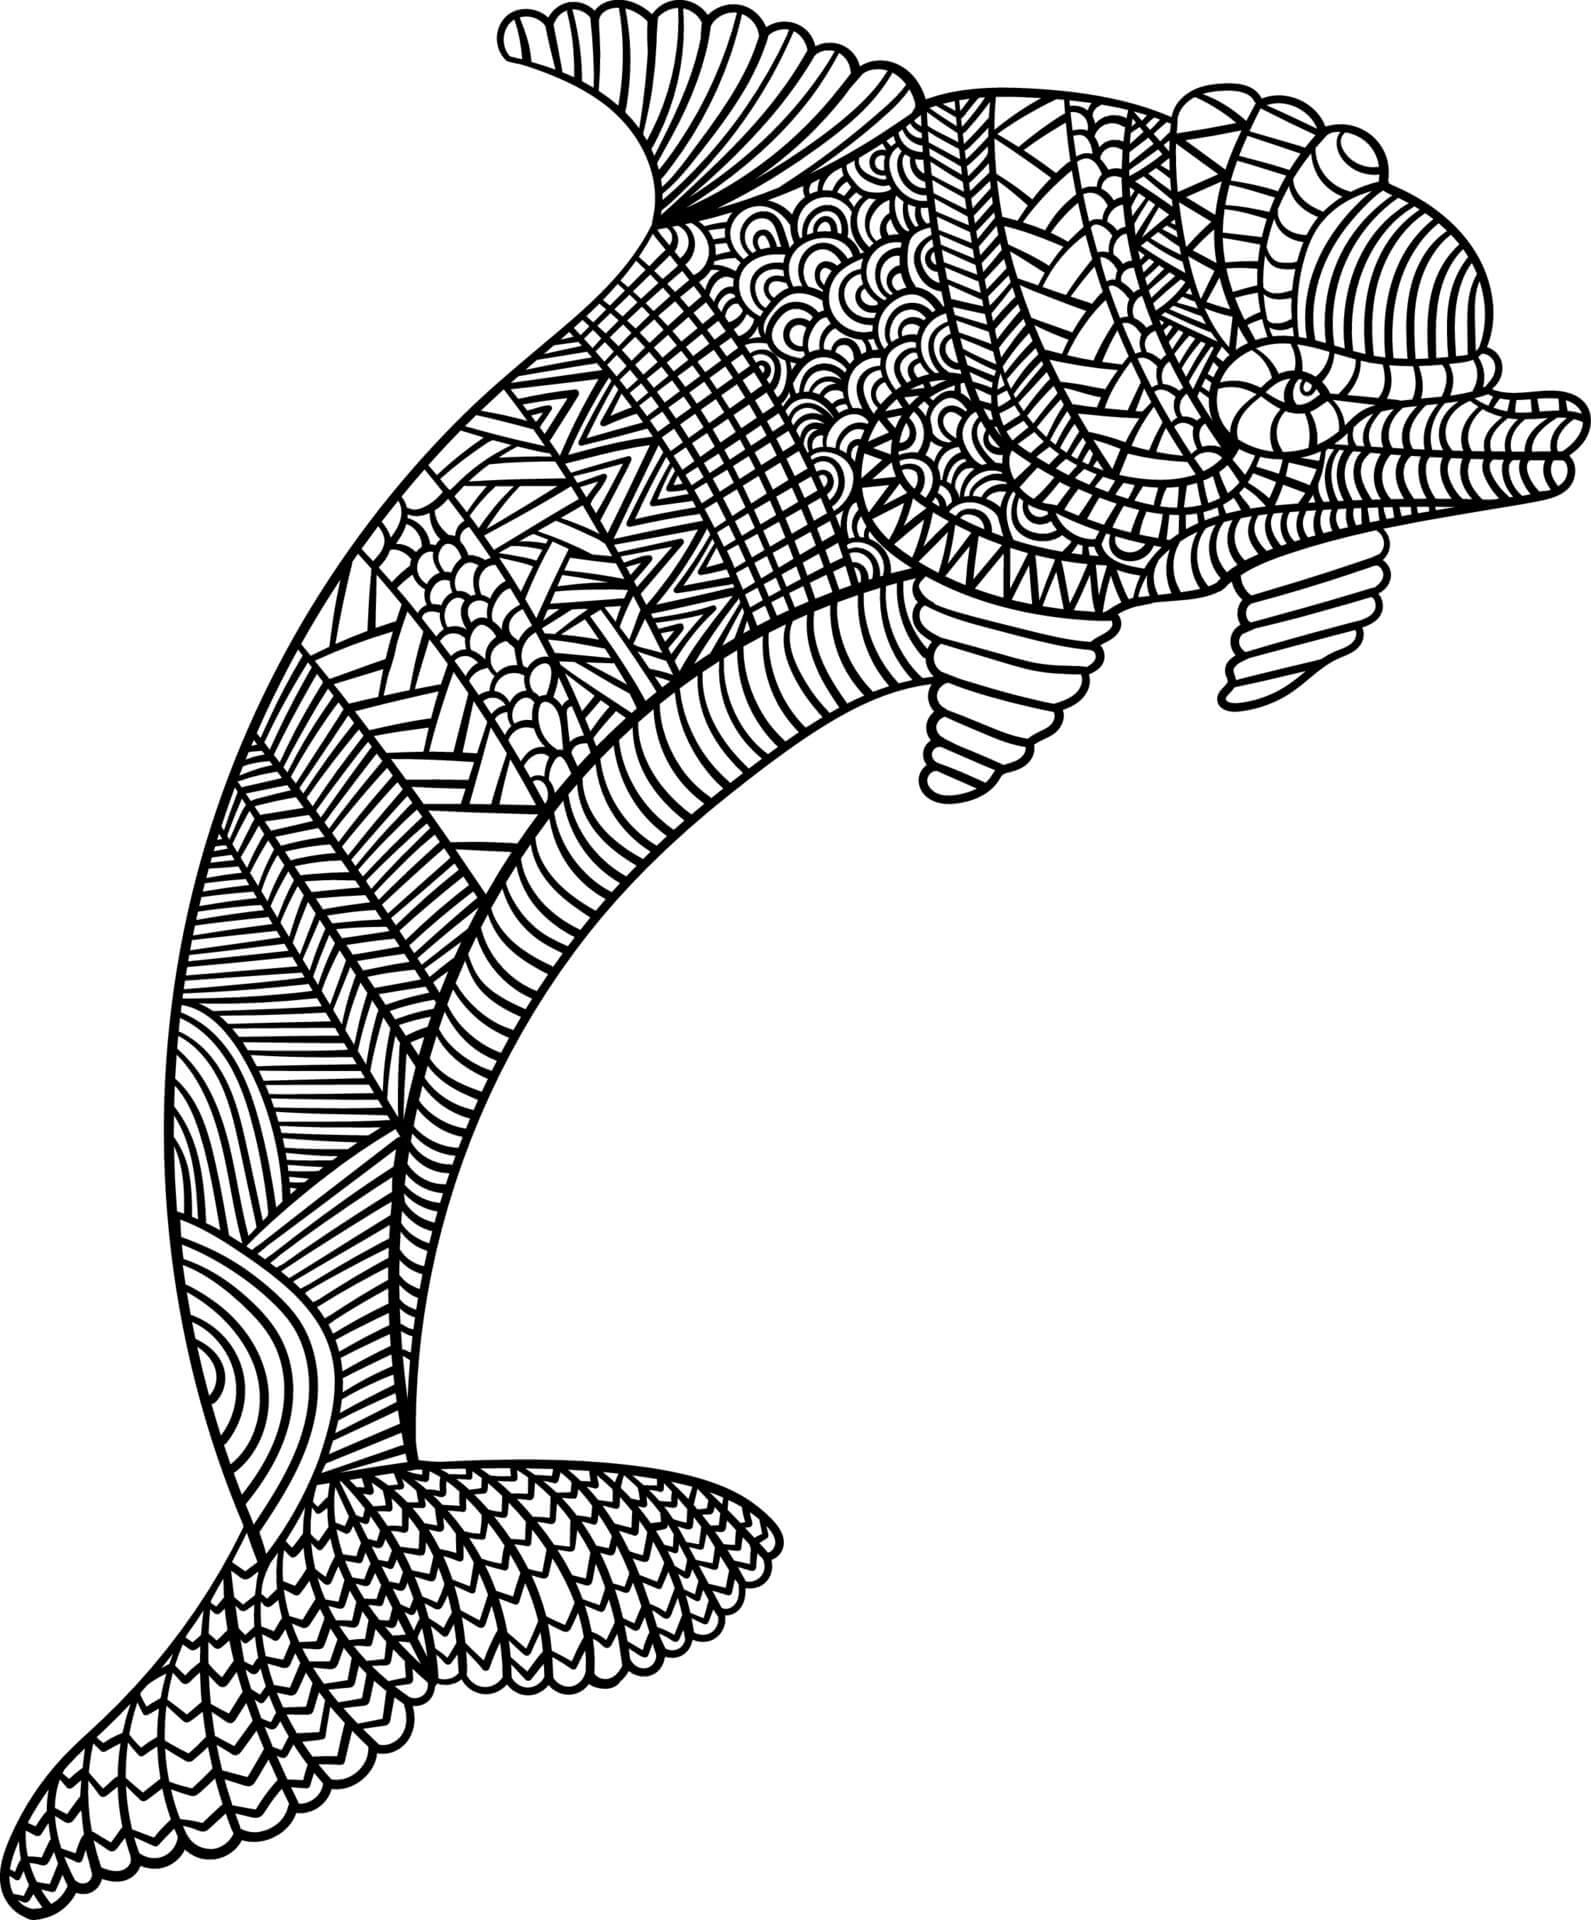 Mandala Dolphin Coloring Page - Sheet 5 Mandalas